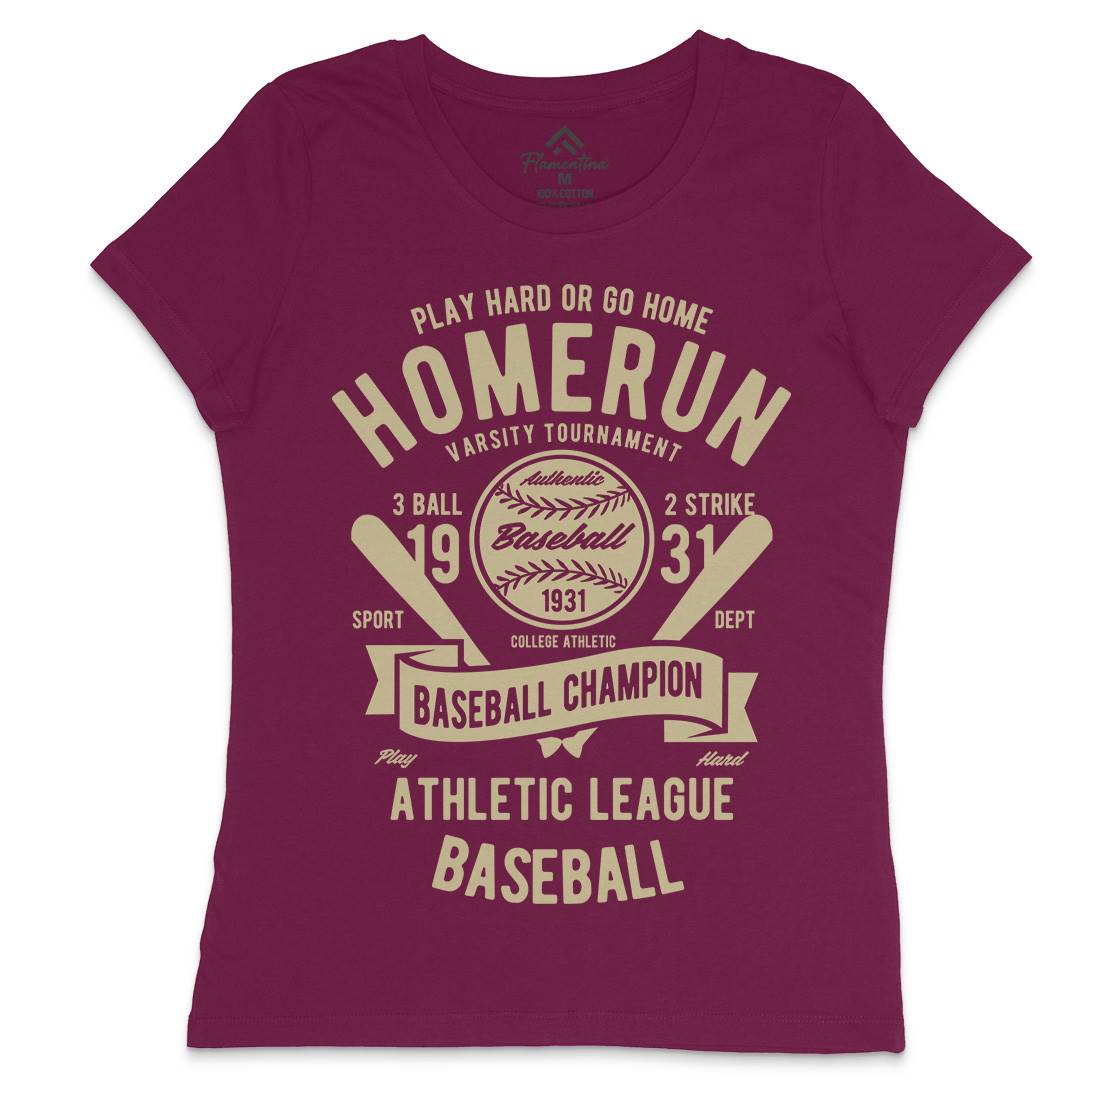 Homerun Baseball Womens Crew Neck T-Shirt Sport B221